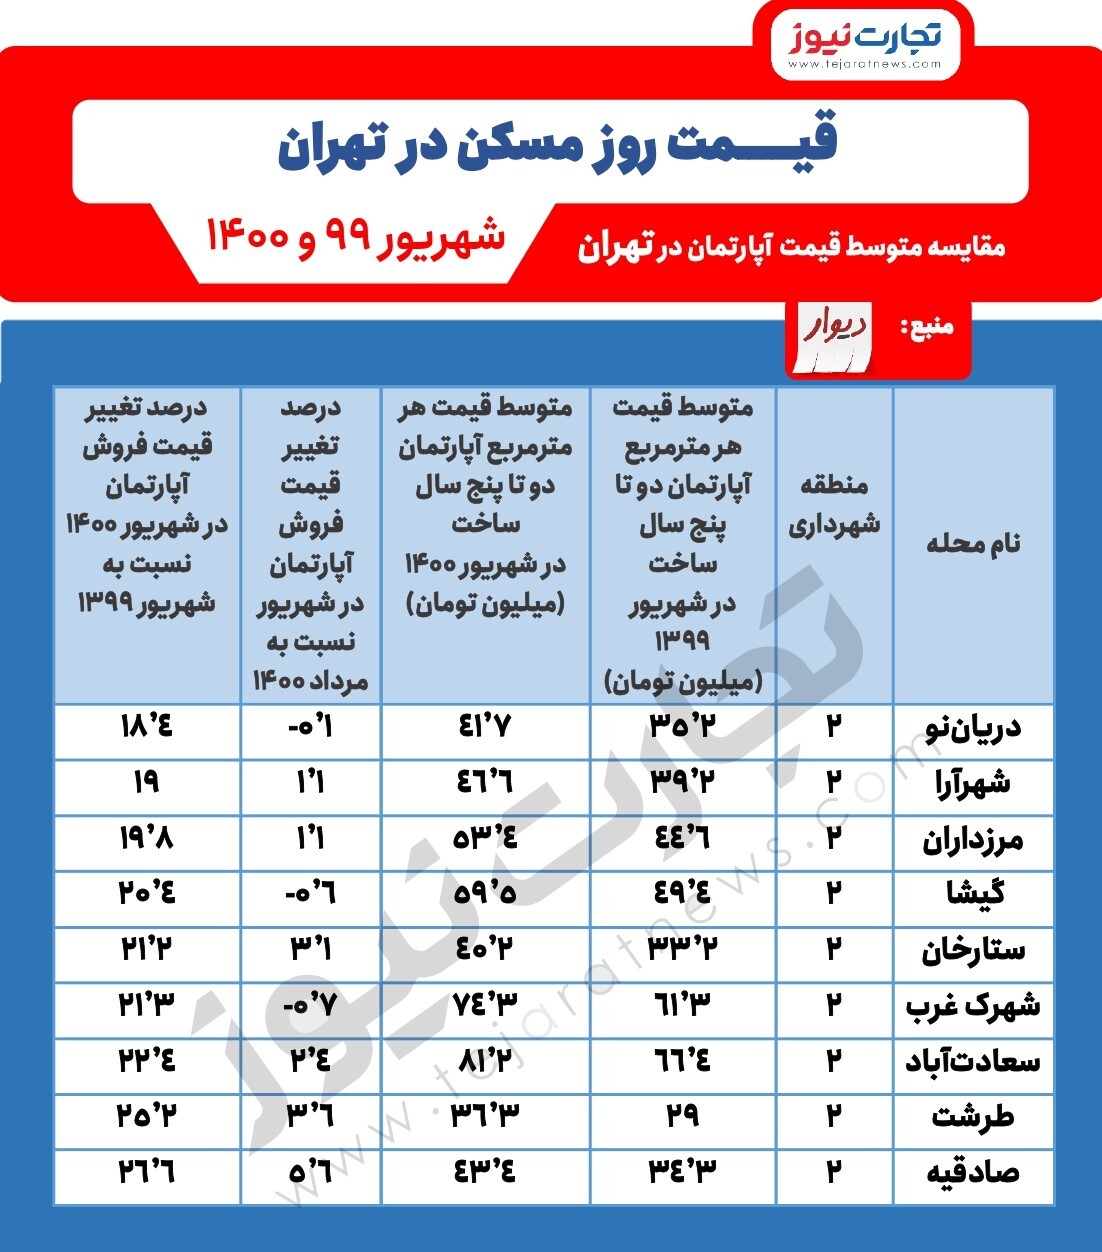 افزایش ۲۶ درصدی مسکن در صادقیه/ منطقه دو تهران چقدر افزایش قیمت داشته است؟